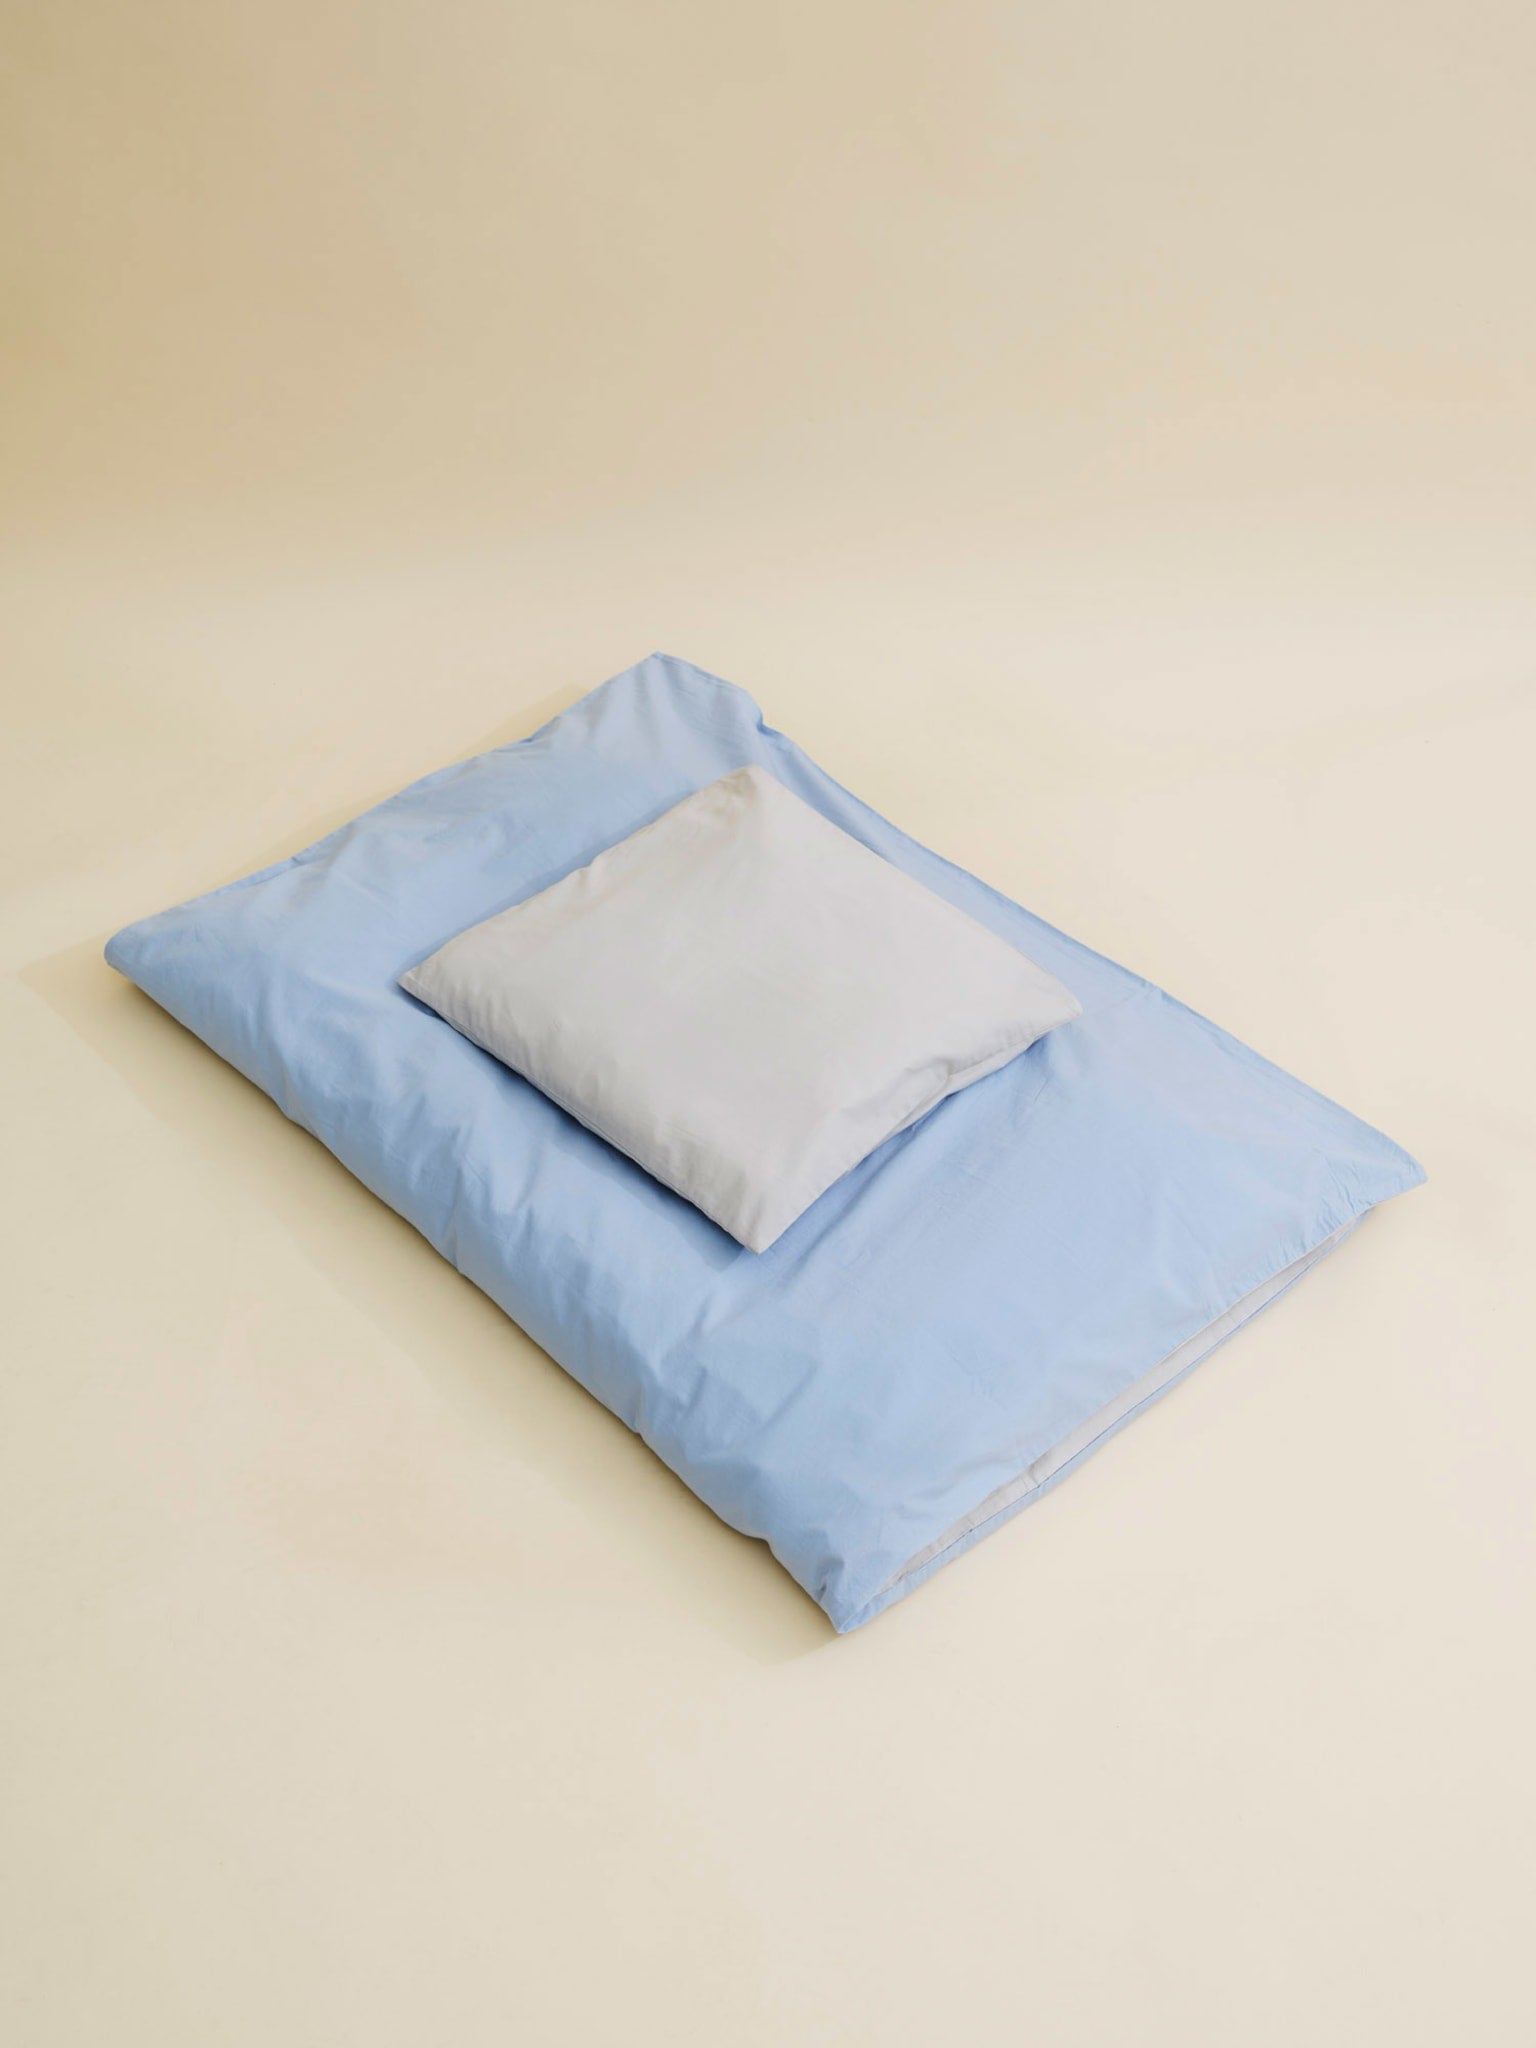 FUTURE BABY BED LINEN 70*100/40*45 (DK) - LT. GREY/ DUSTY BLUE